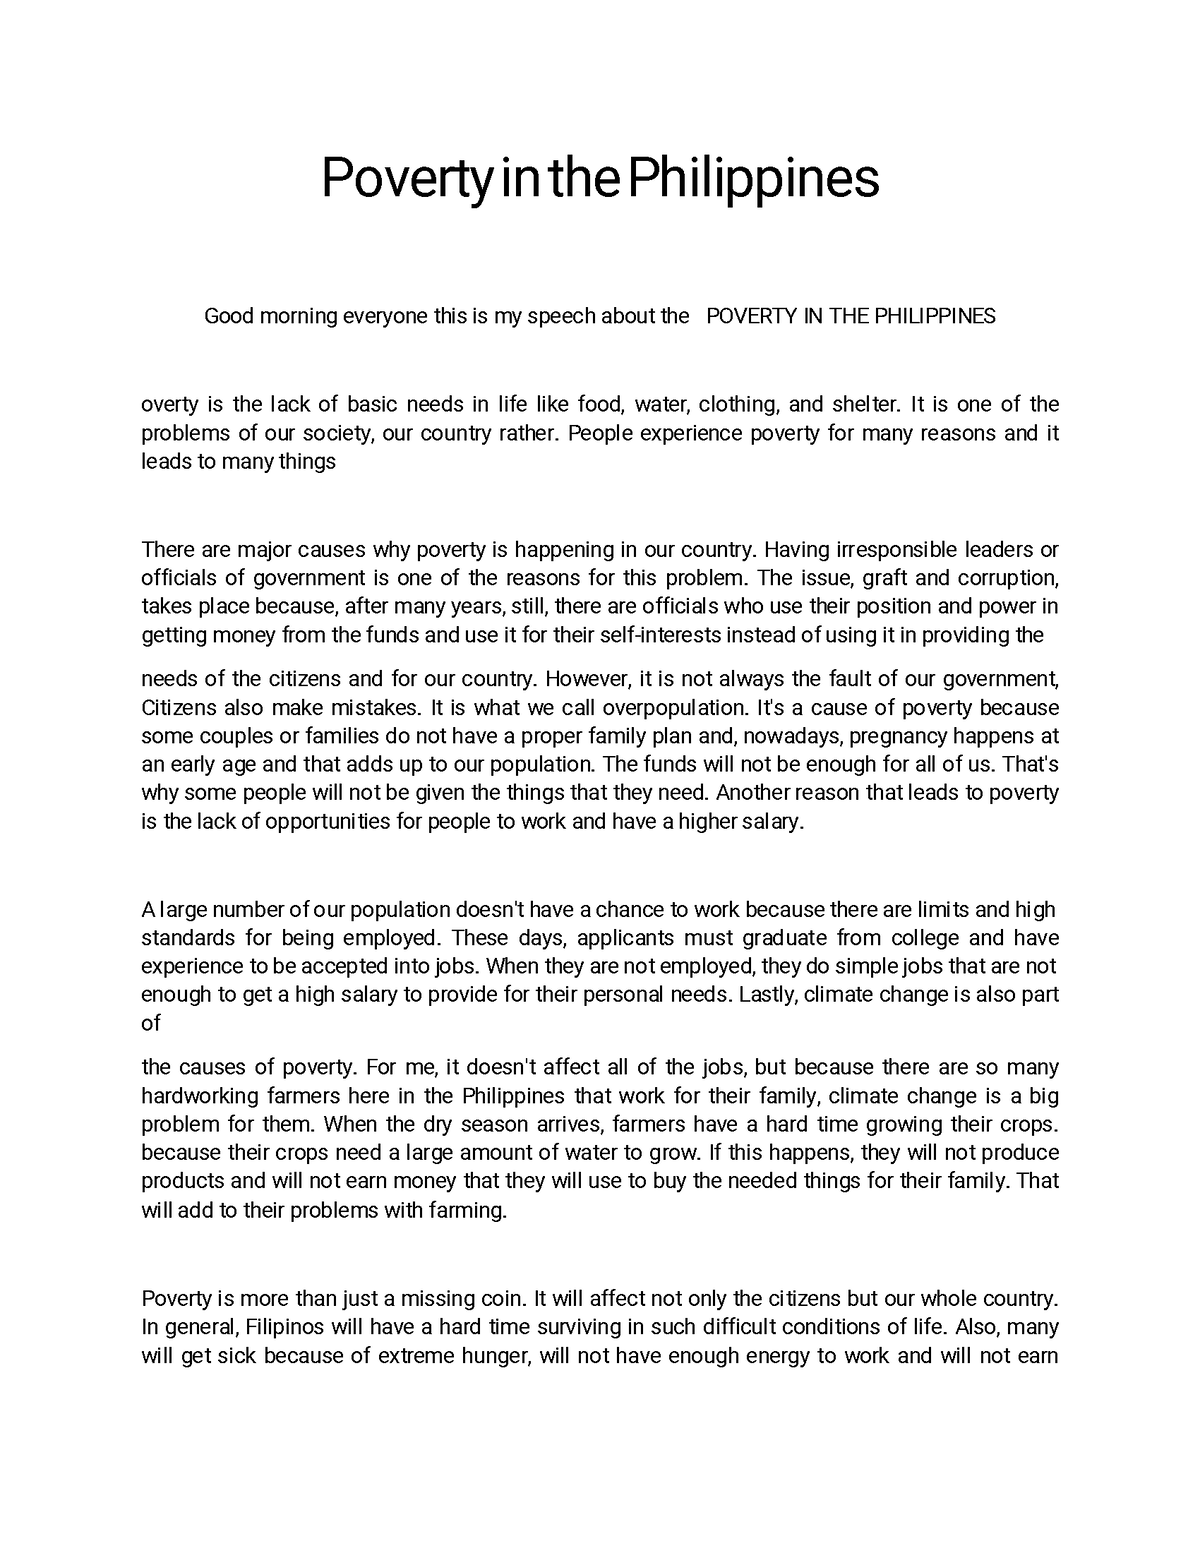 poverty in the philippines persuasive speech